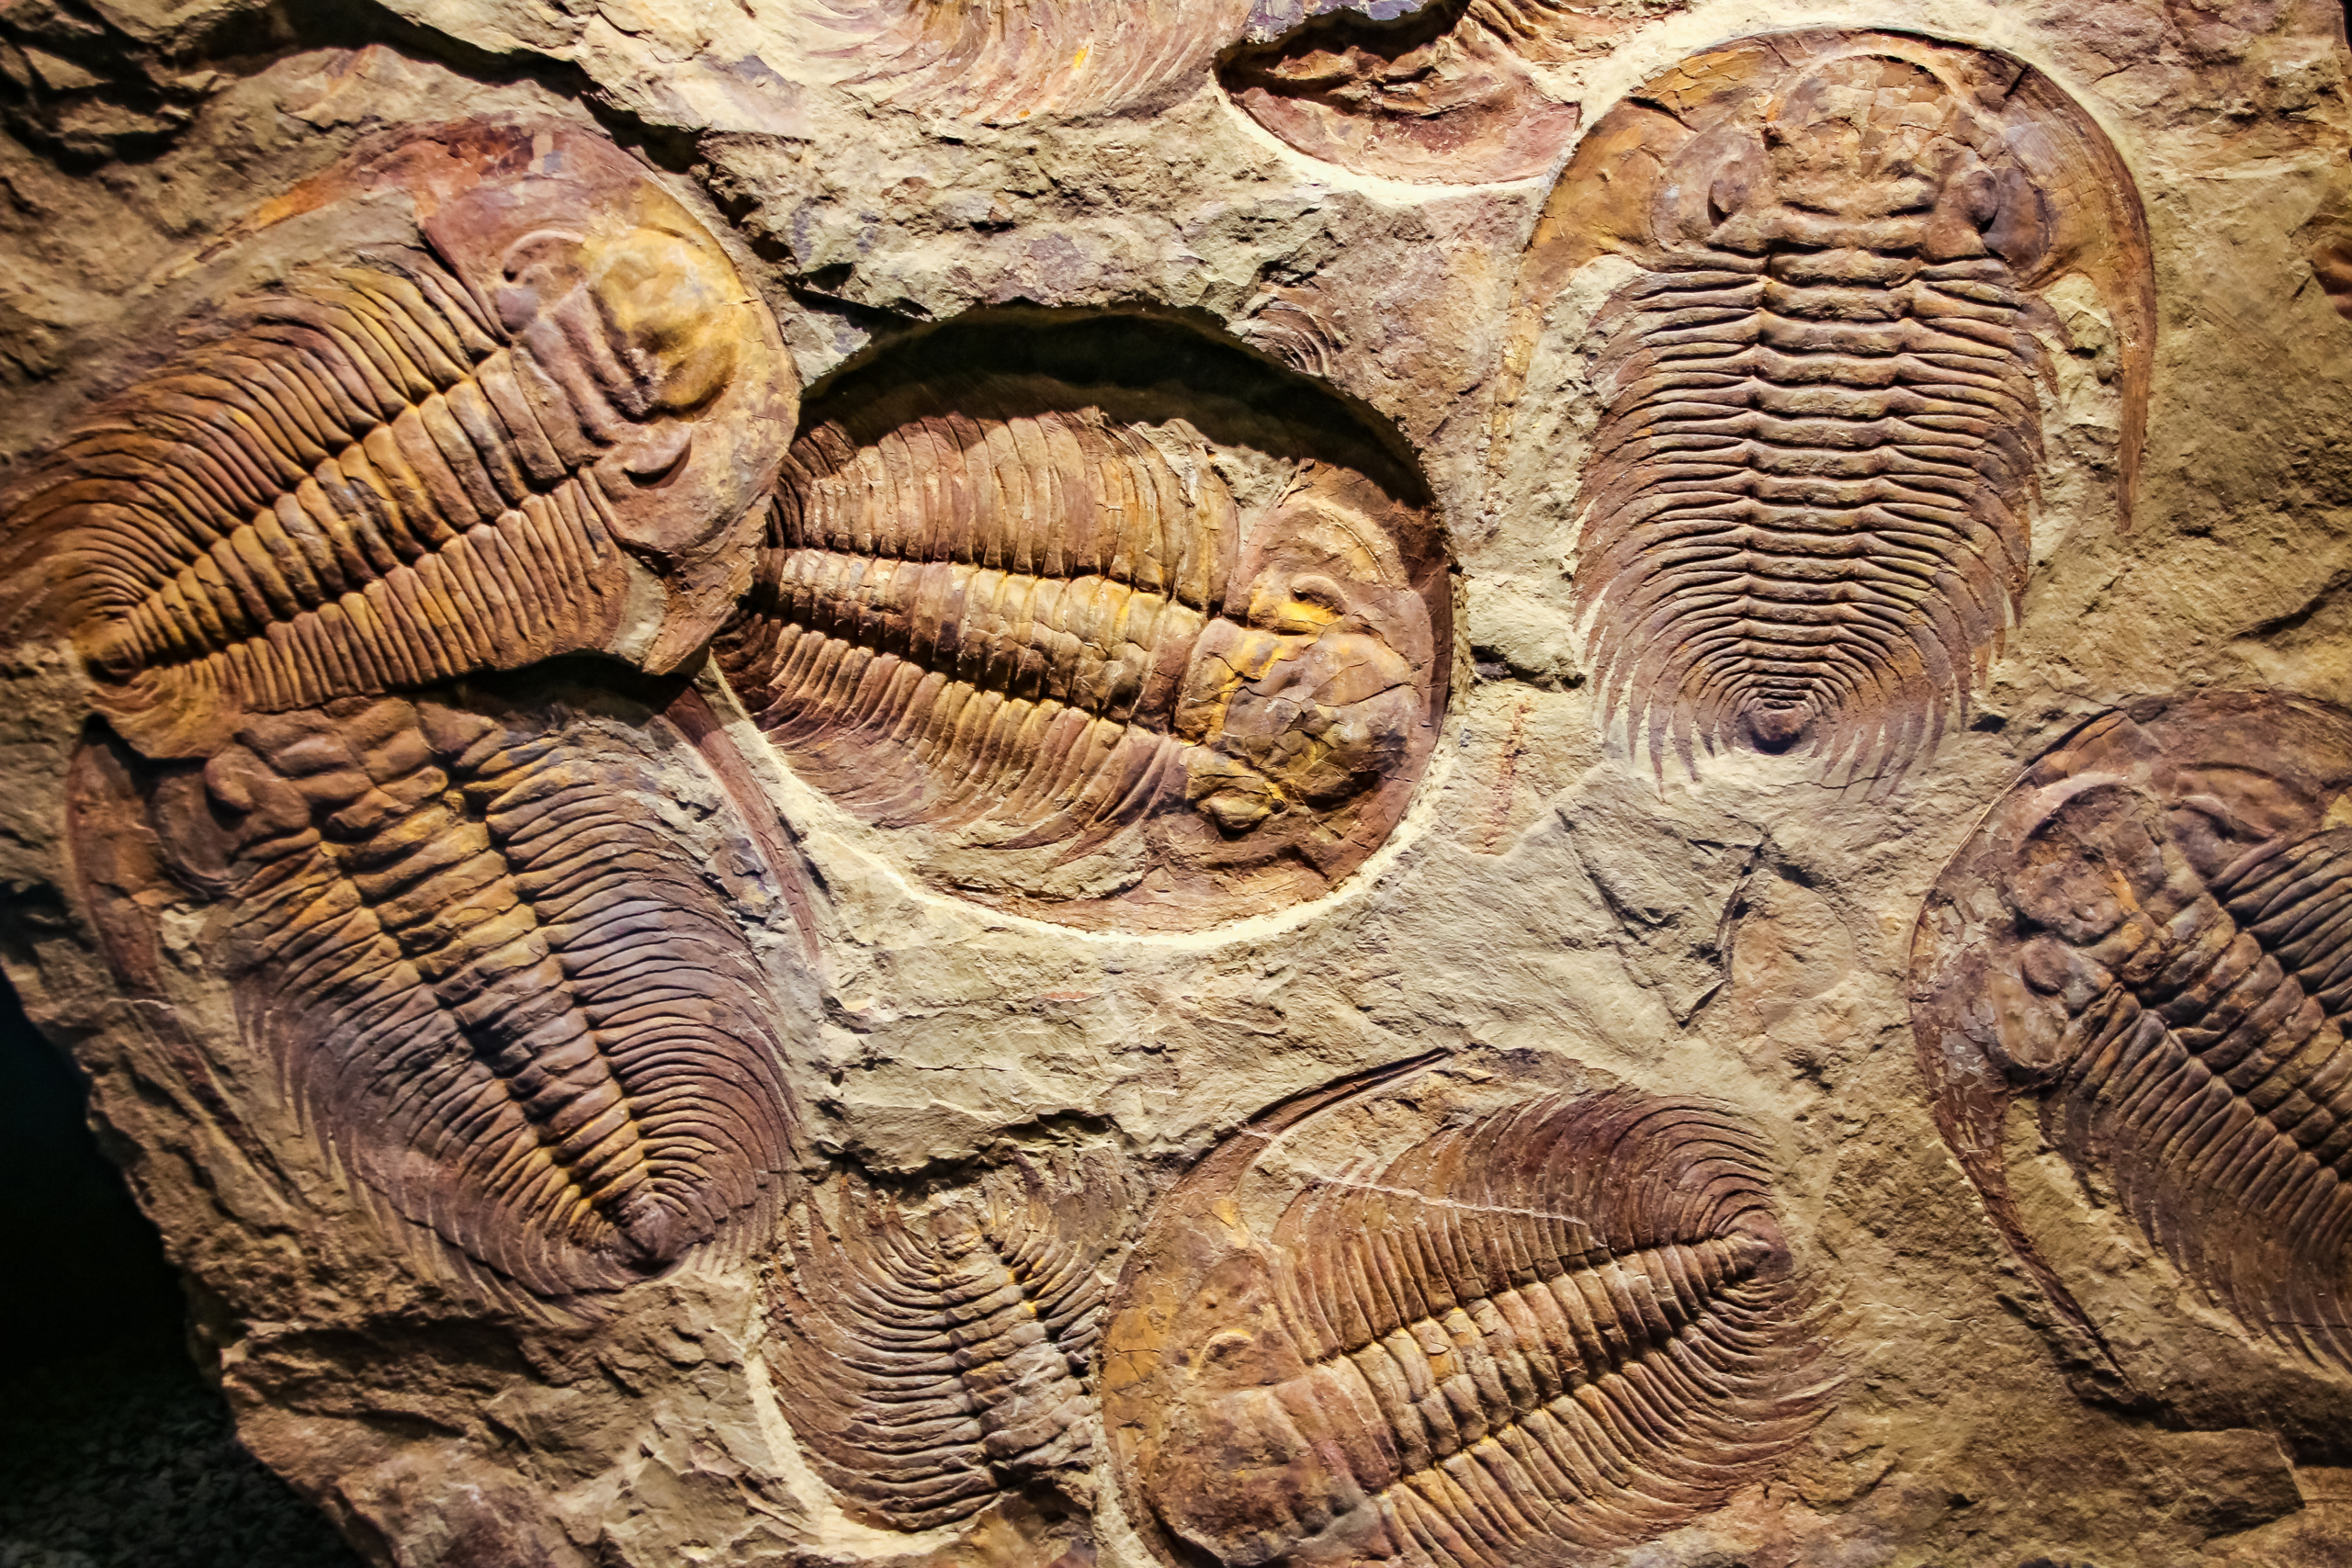 Dấu vết trên đá của bọ ba thùy từ 500 triệu năm trước. Bọ ba thùy thuộc lớp Bọ ba thùy, là động vật chân đốt hình nhện biển đã tuyệt chủng. (Ảnh: Merlin74/Shutterstock)